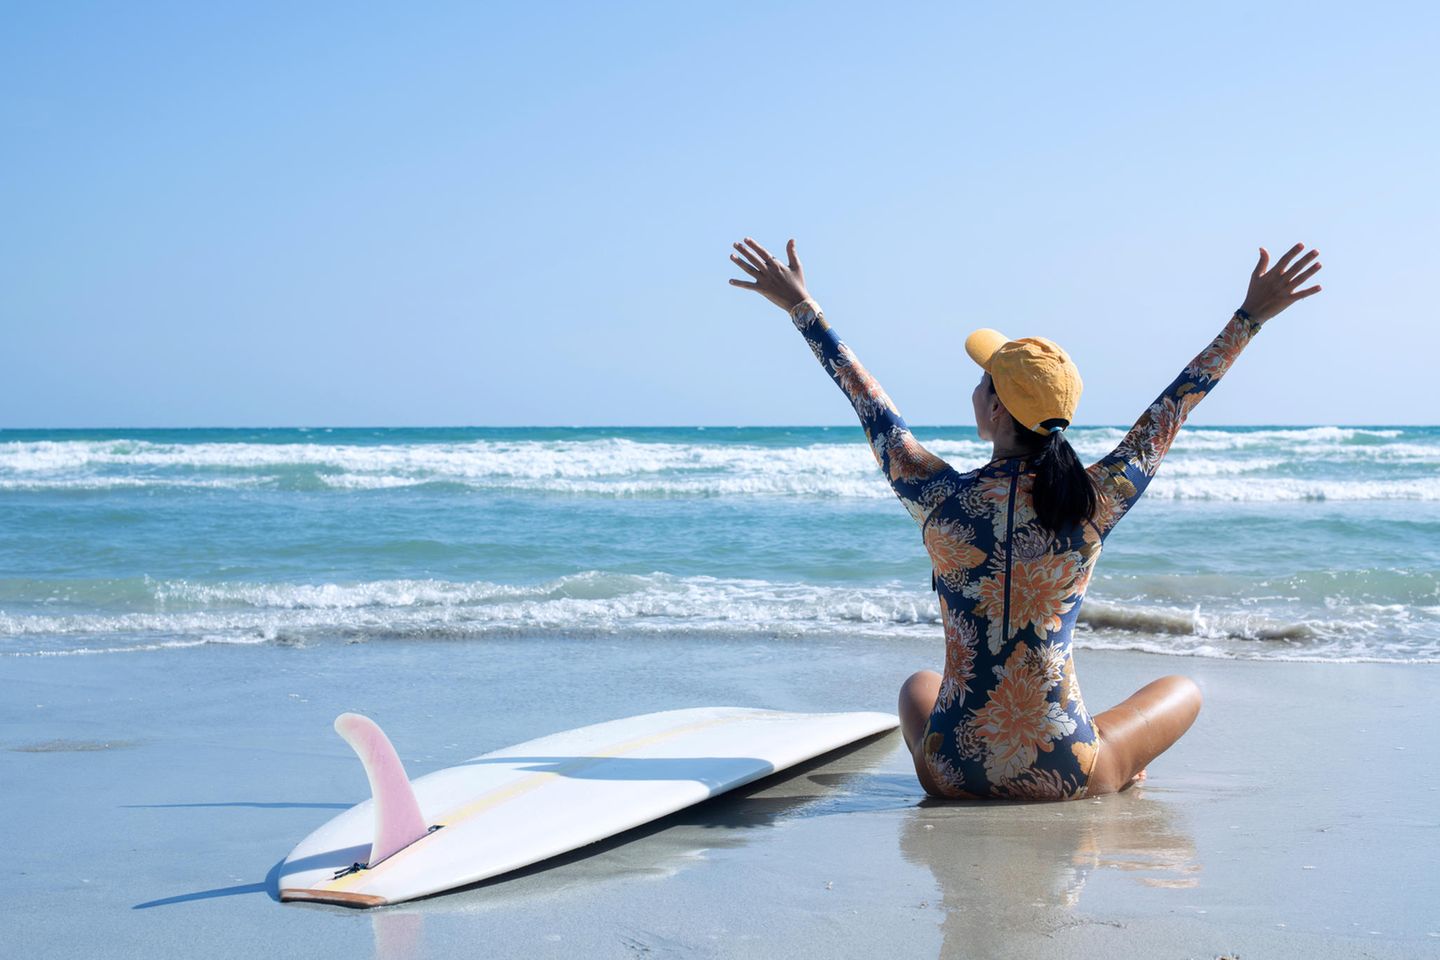 Surf-Badeanzug: Die perfekte Beachwear für einen aktiven Tag auf dem Wasser, Frau am Strand mit Surfbrett und Meer